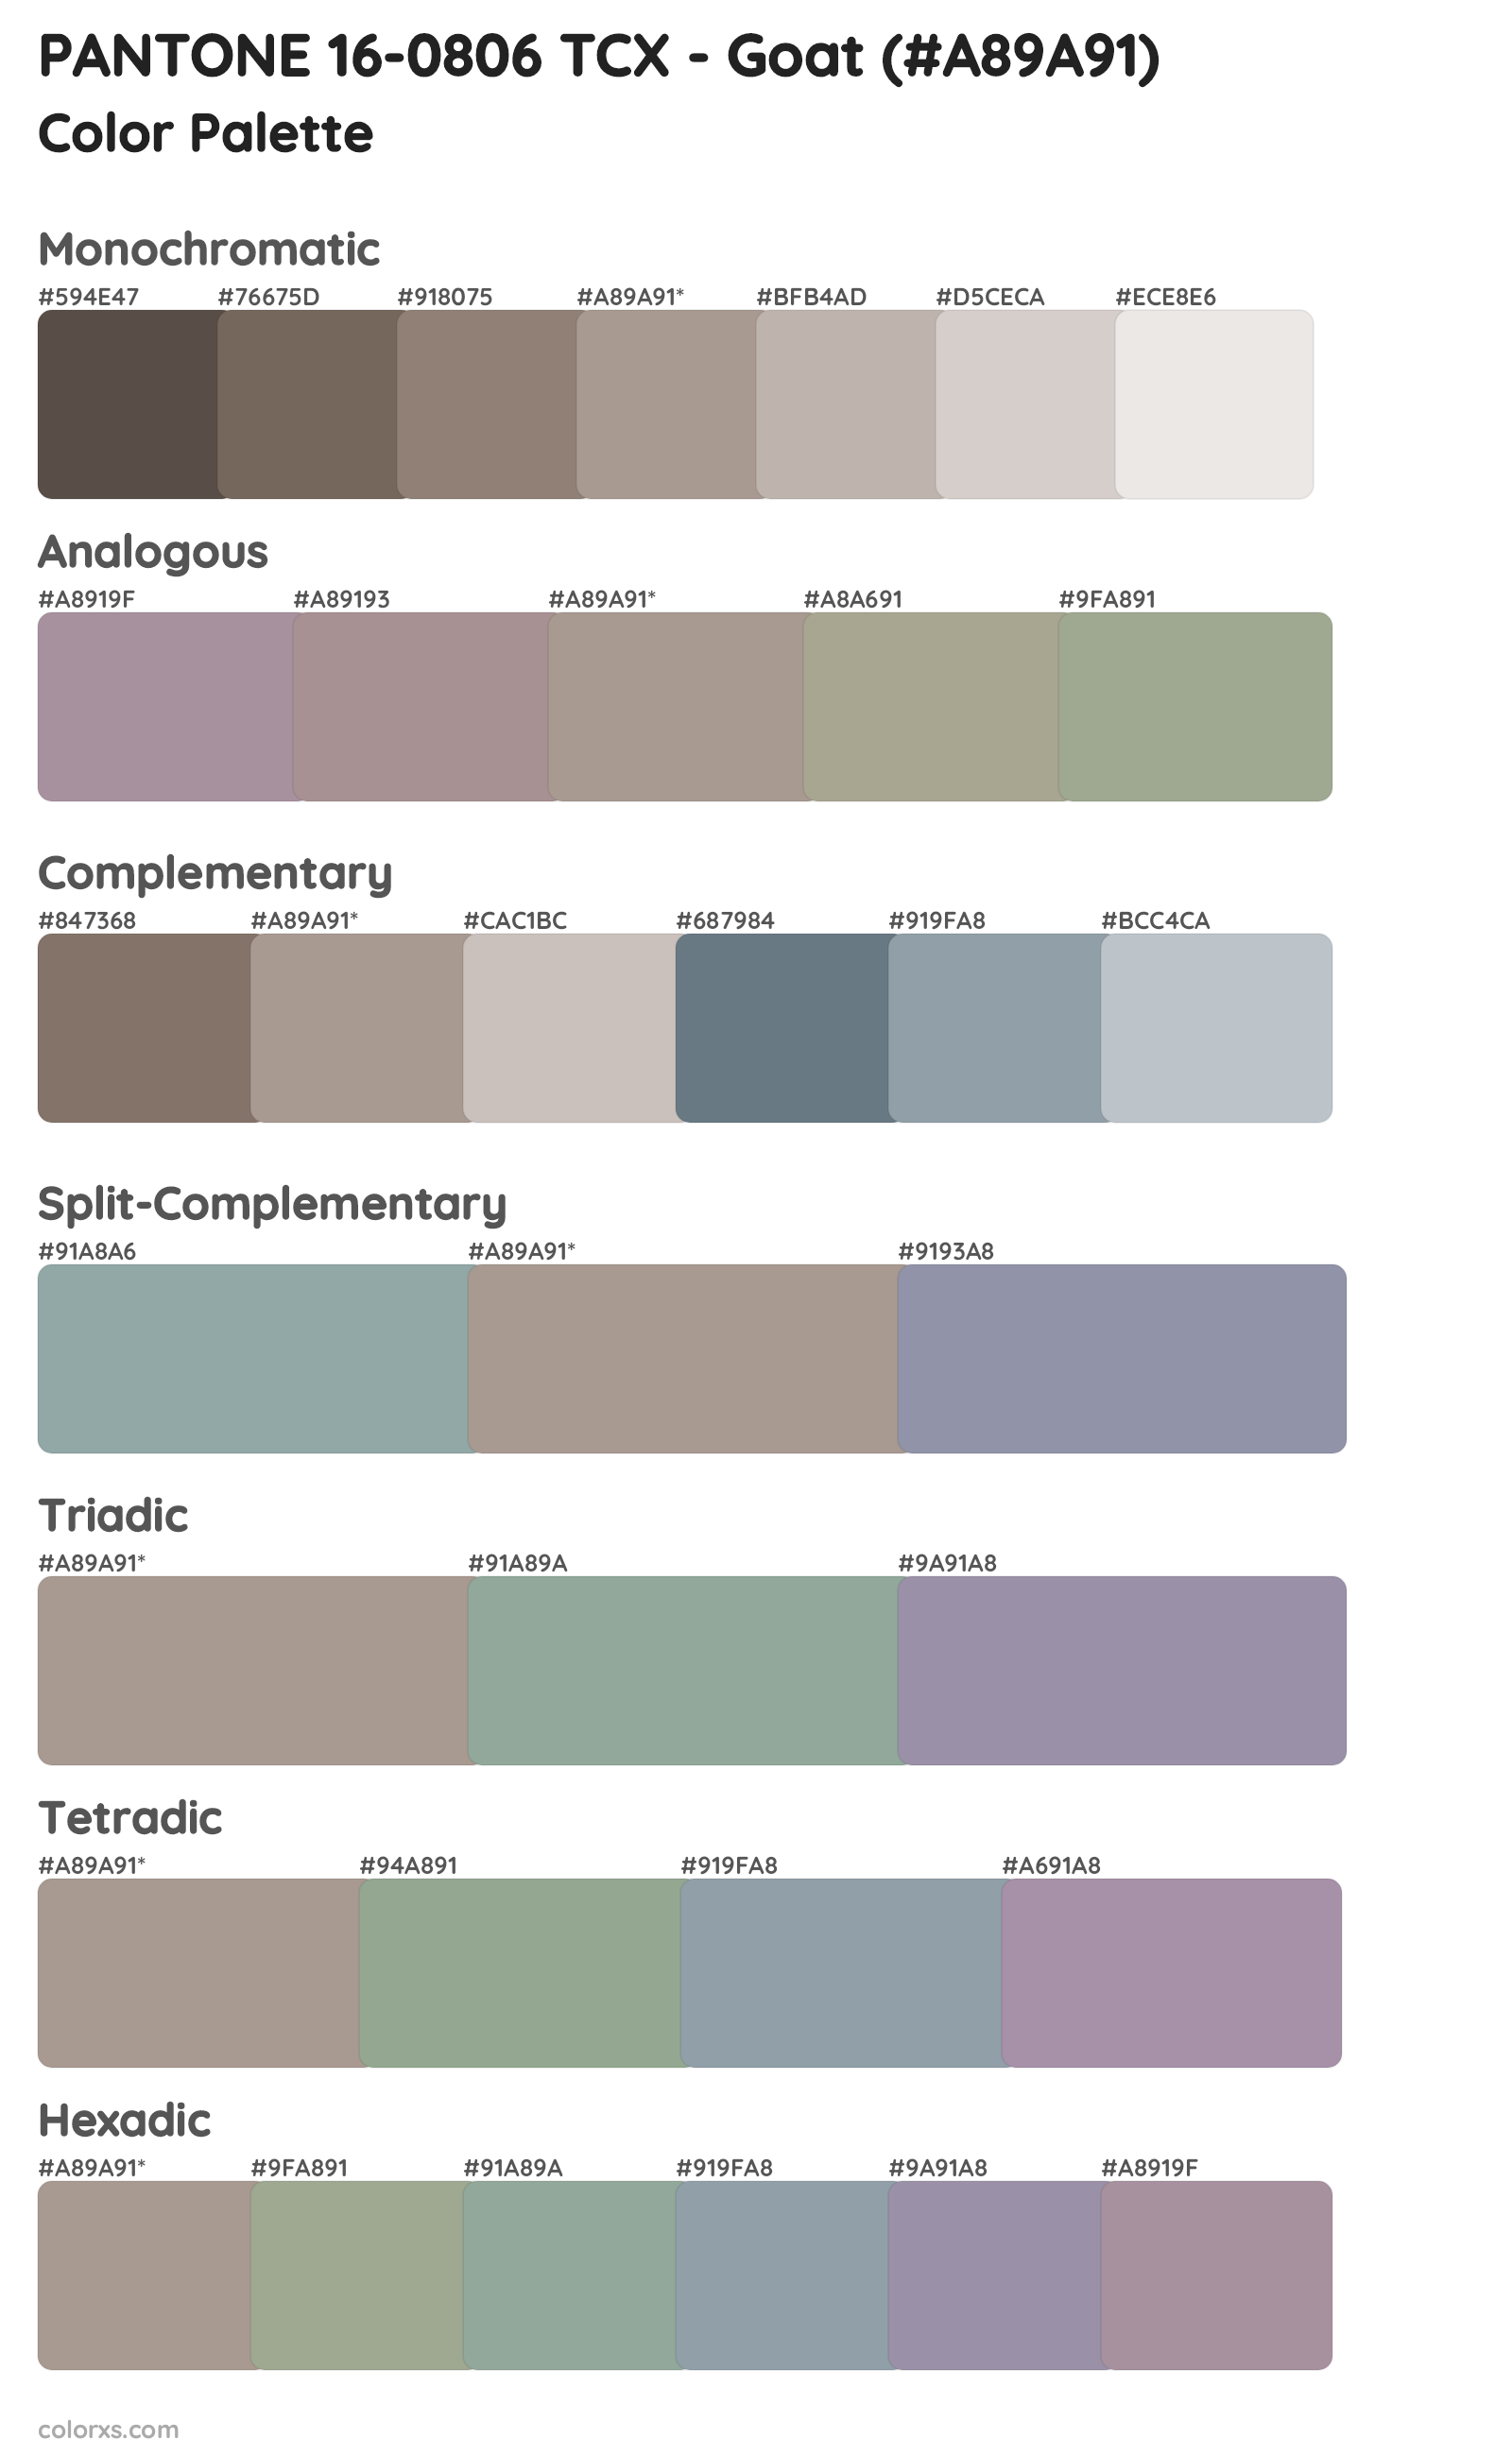 PANTONE 16-0806 TCX - Goat Color Scheme Palettes